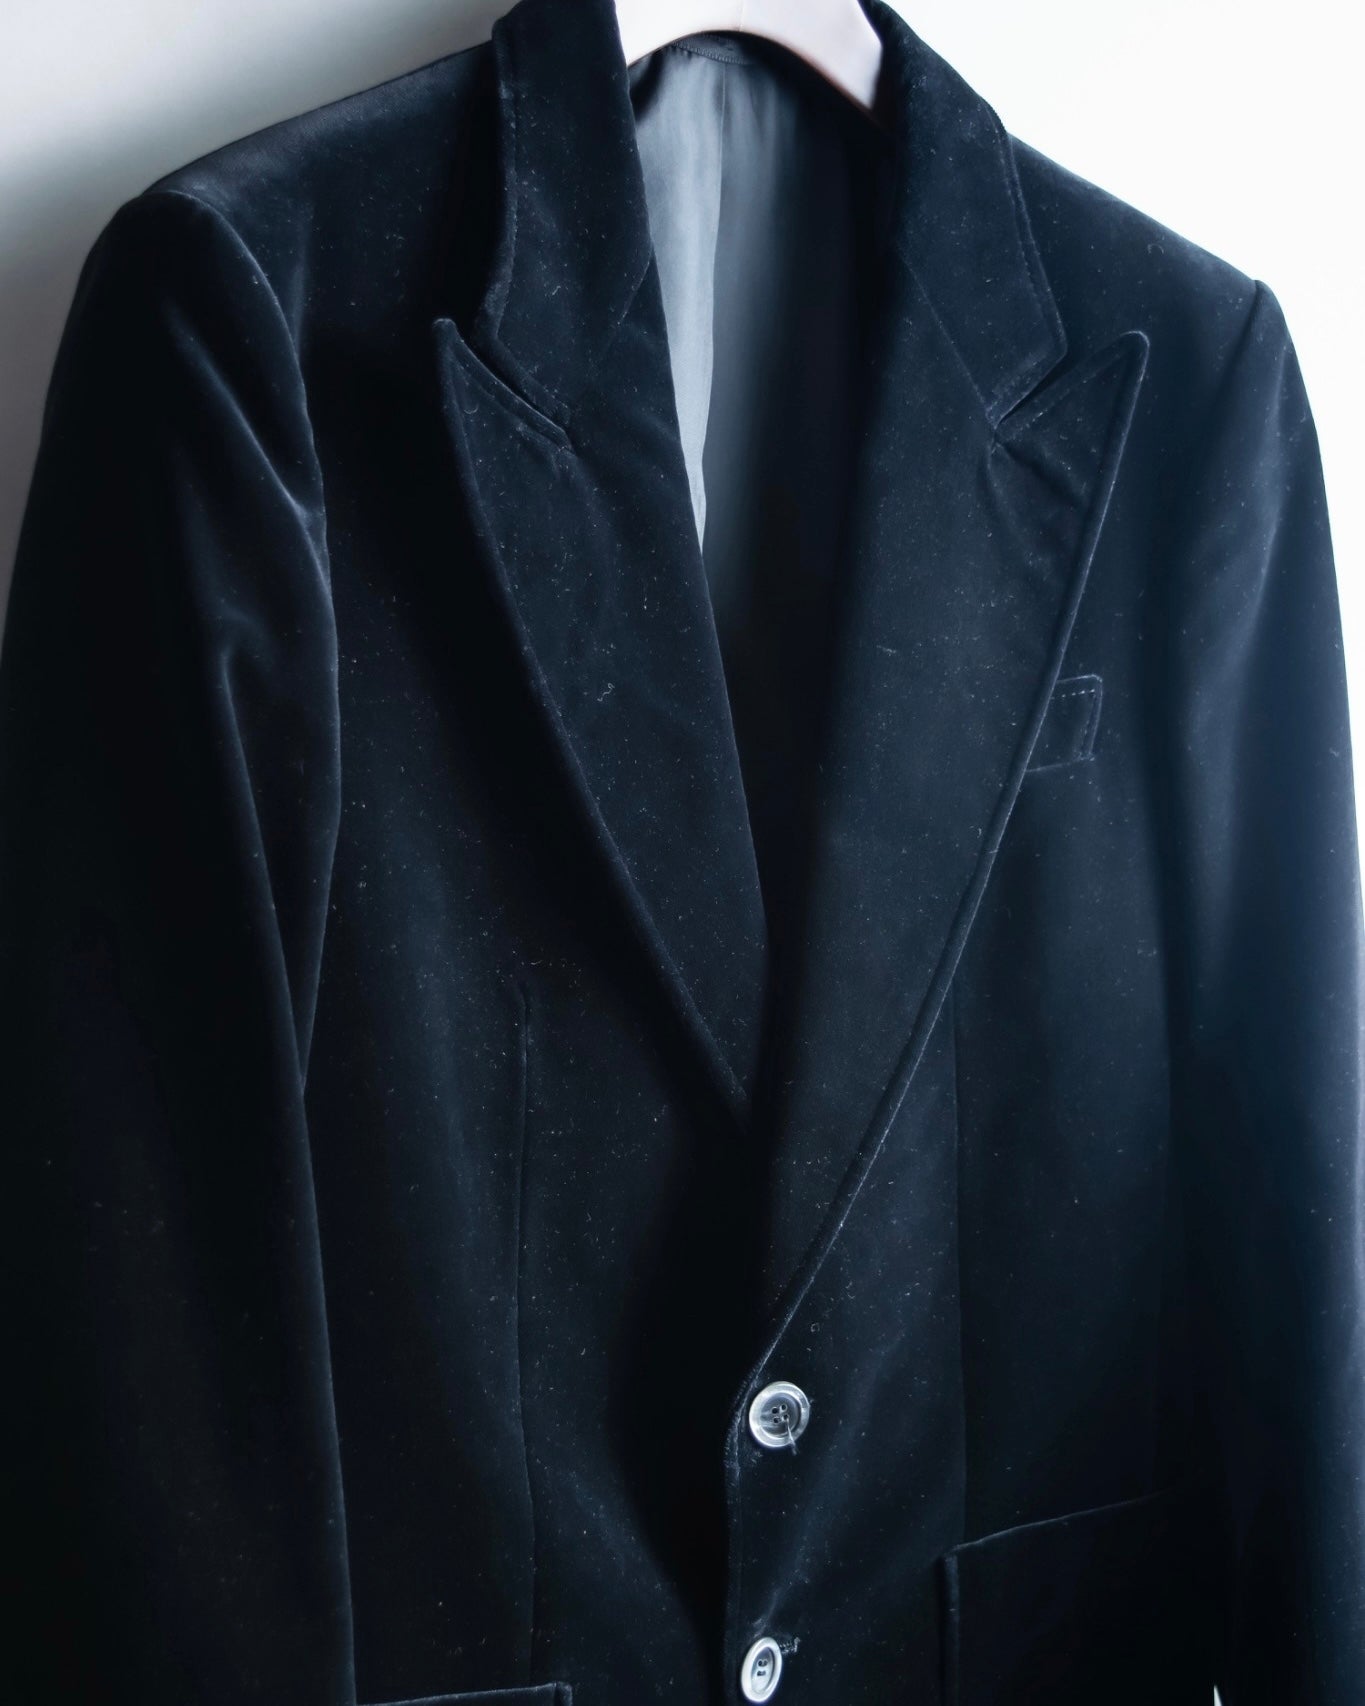 Vintage beautiful velor tailored jacket